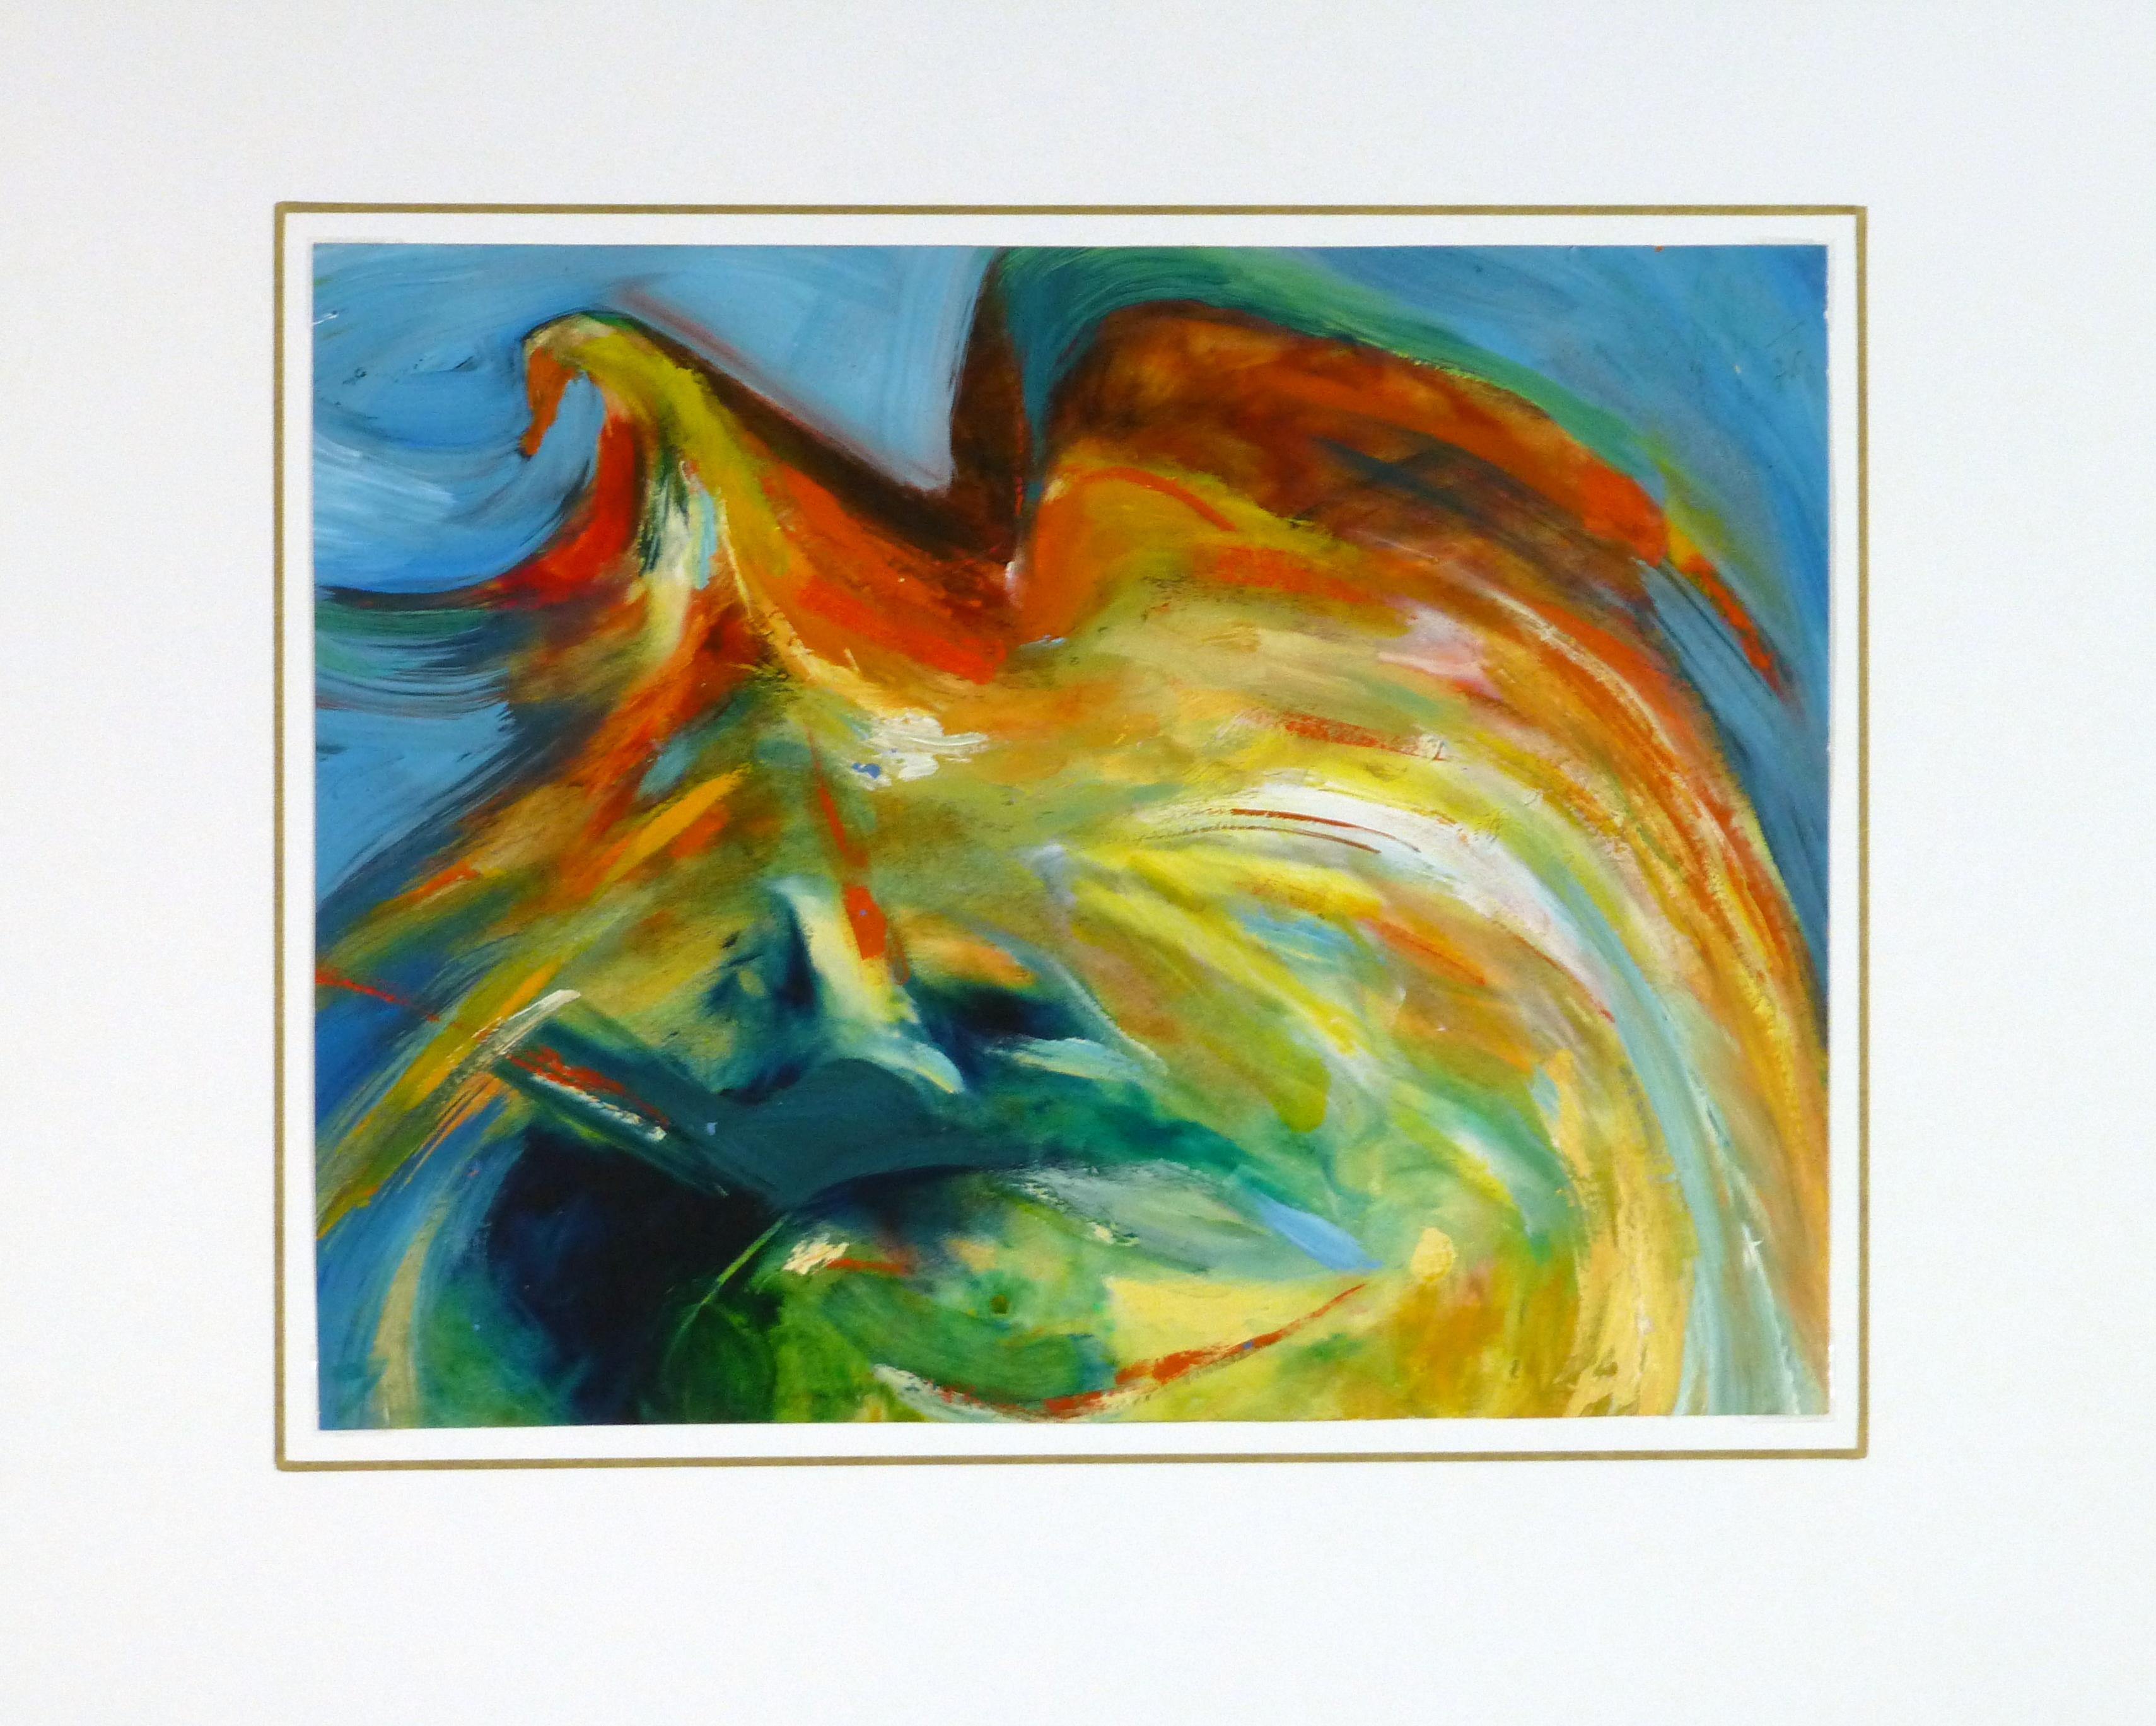 Ausdrucksstarkes und helles abstraktes Acrylgemälde mit Anklängen an den Vogelflug, 1975. 

Es wird auf einem weißen Passepartout mit goldenem Rand präsentiert und passt in einen Rahmen in Standardgröße. Inklusive Plastikhülle und